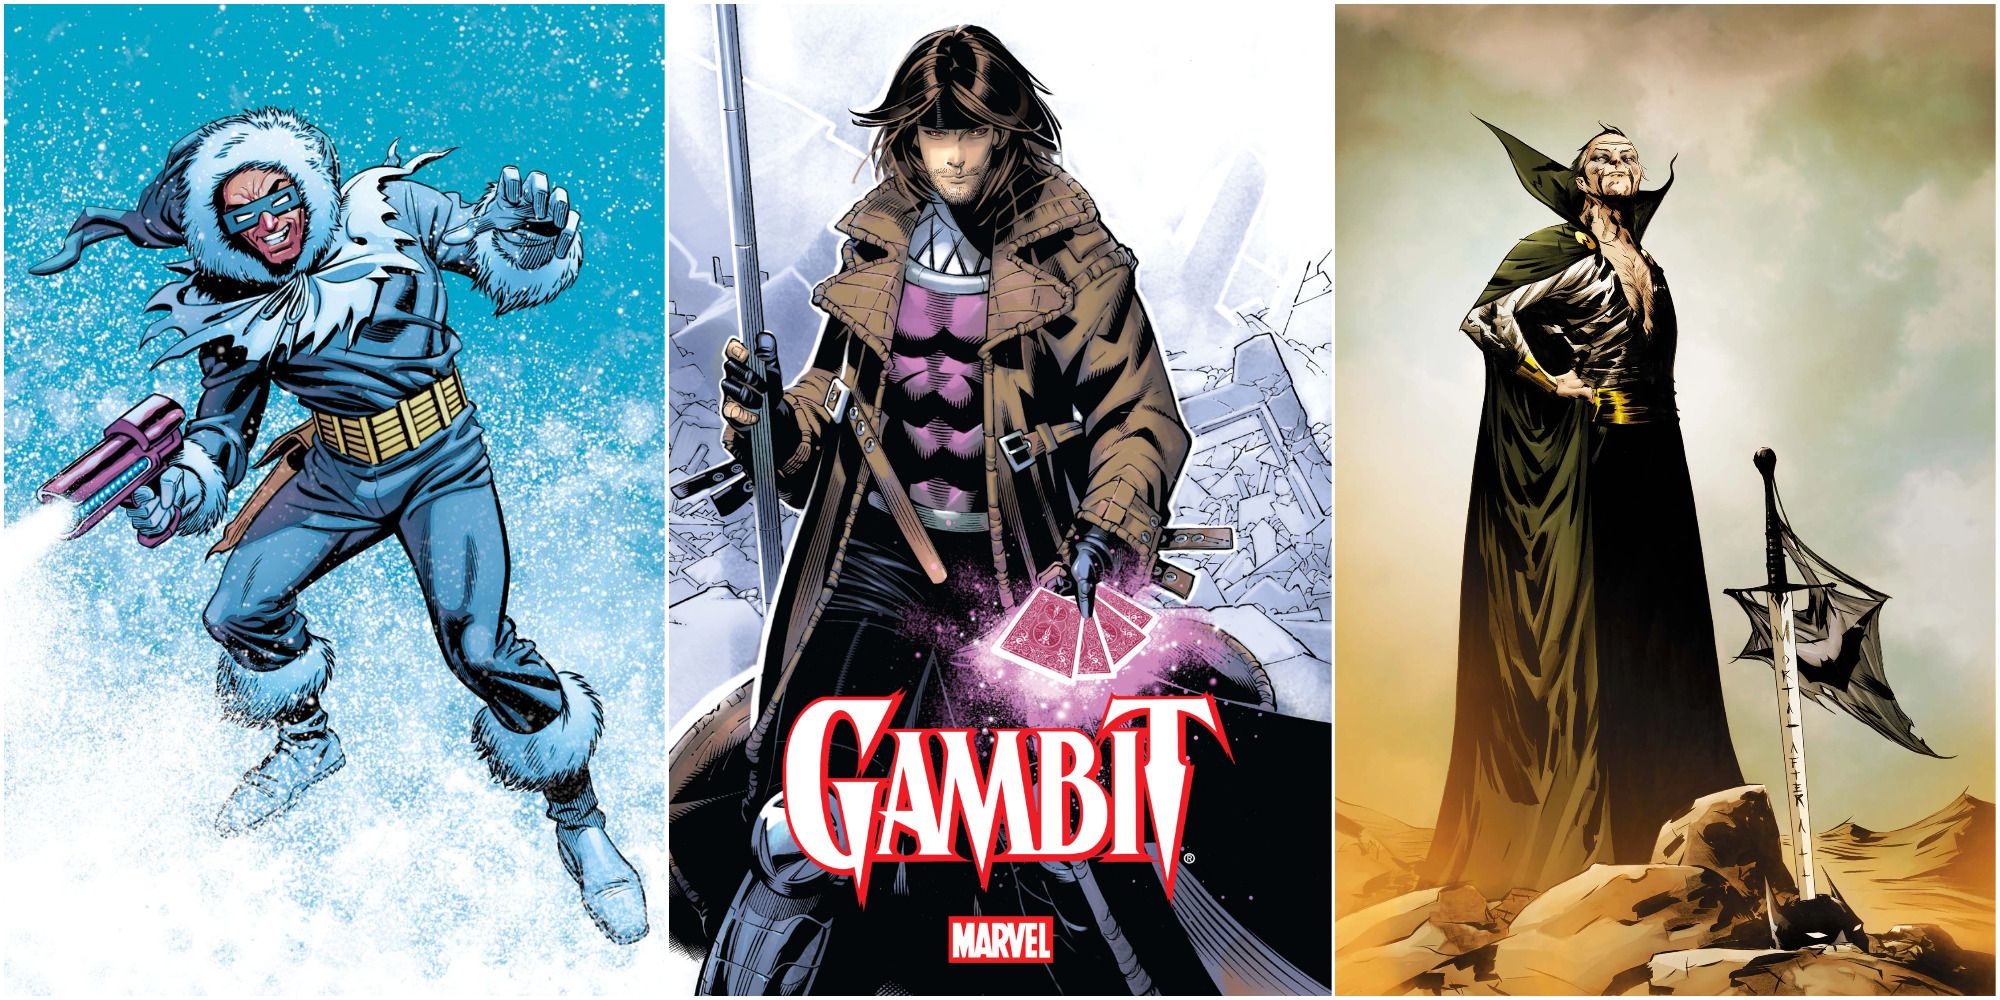 Grifter vs. Gambit (DC vs. Marvel)